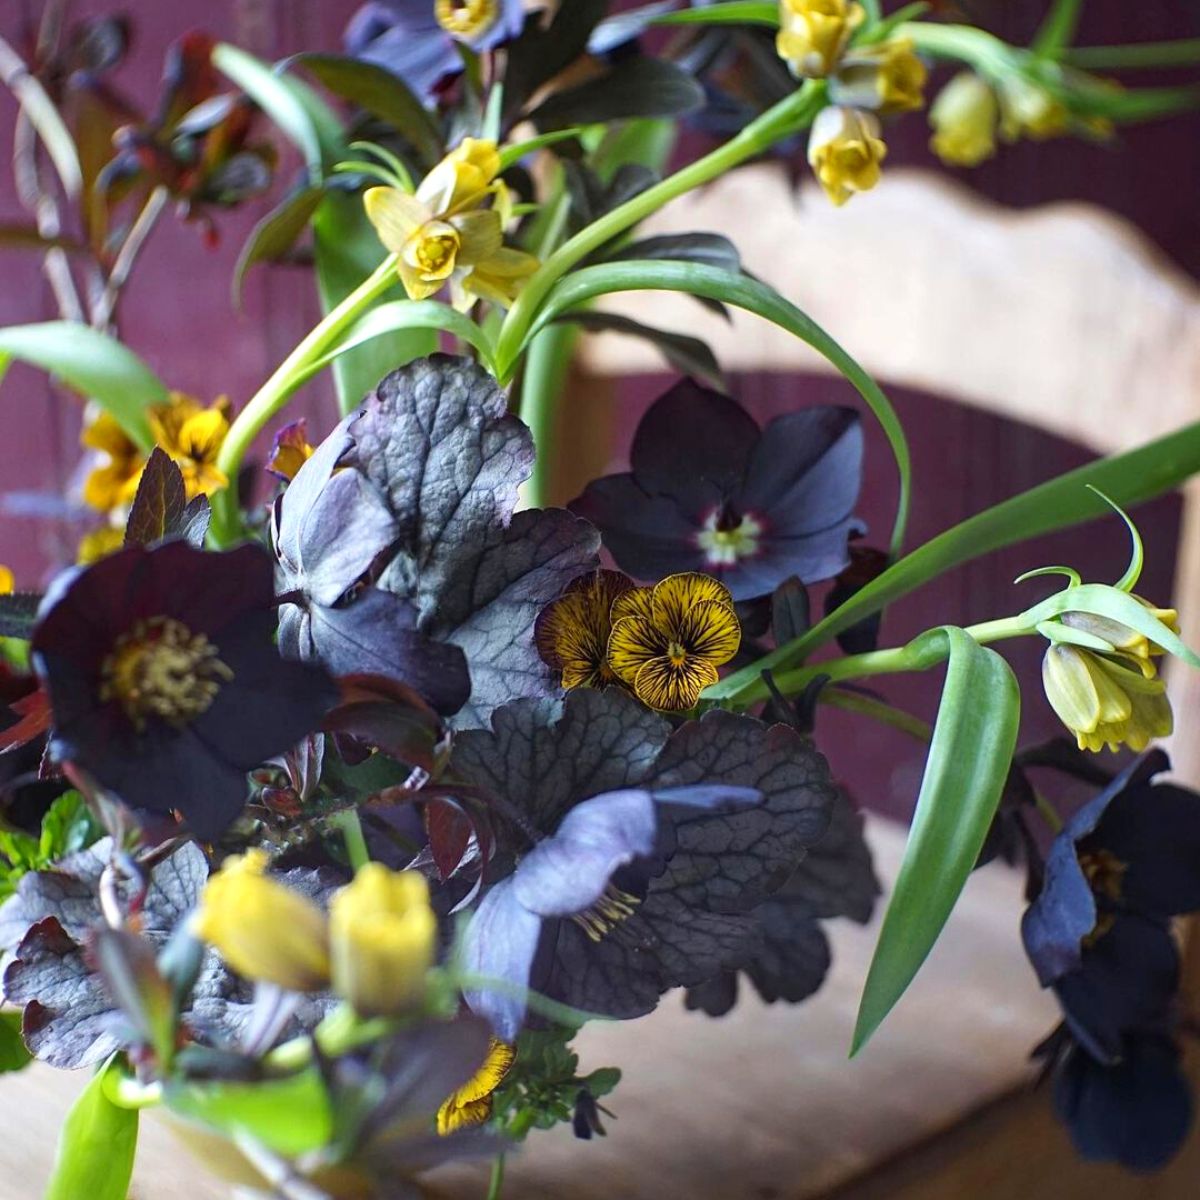 Flower design in darker tones by Emily Avenson